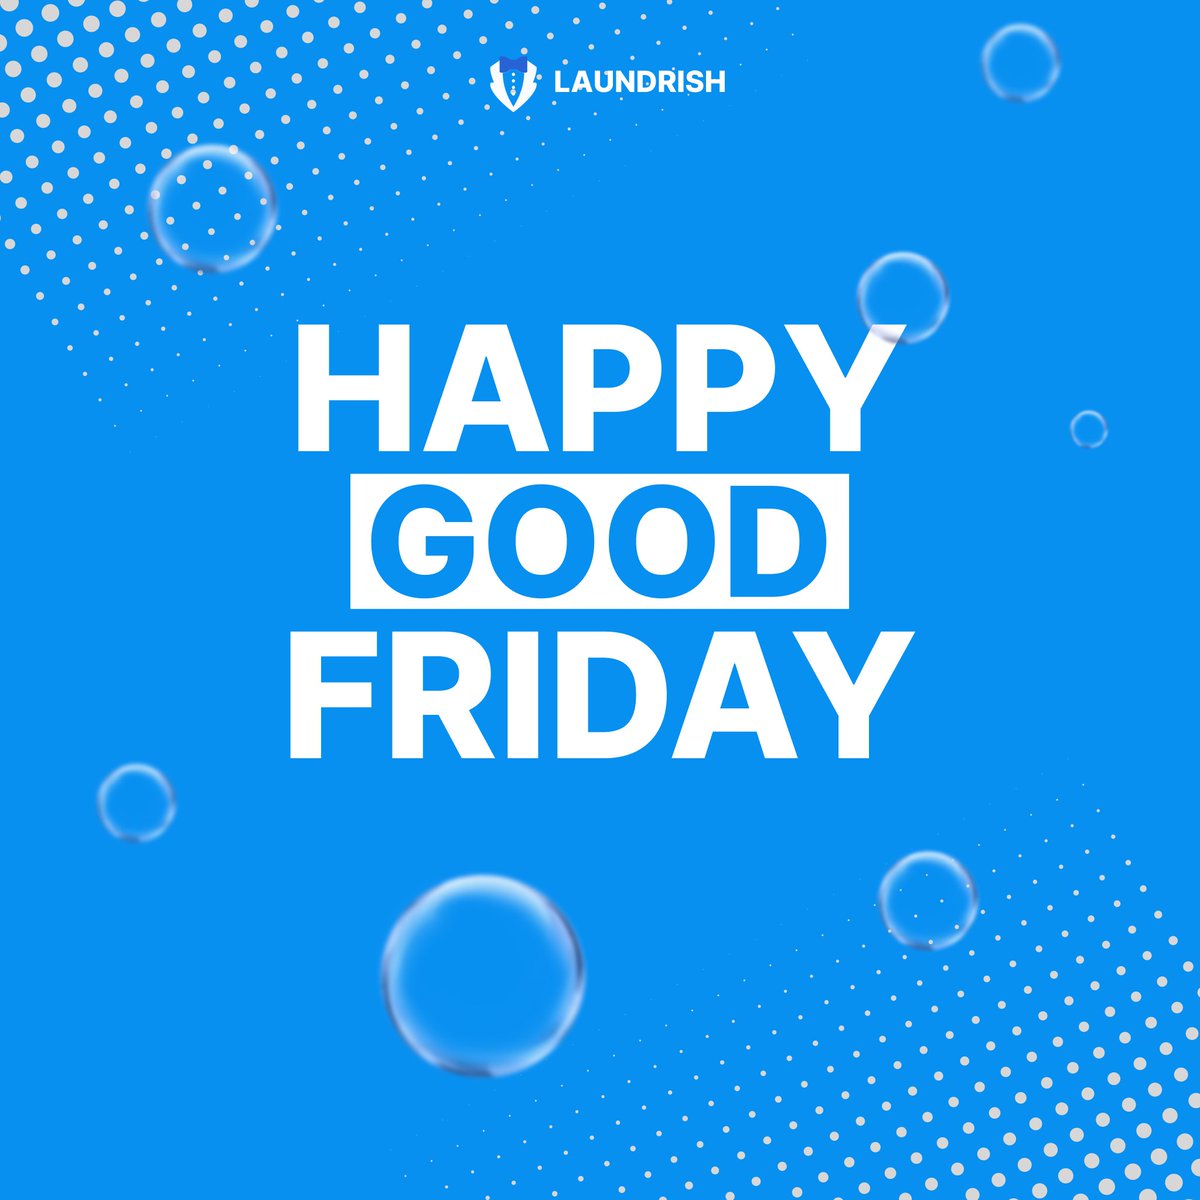 Happy Good Friday..!😊
.
.
#laundrish #laundryday #friday  #HappyFridayyy  #laundryservice #london #londonlife #Drycleaning #ironing #centralUK #londonlifestyle #Uklifestyle  #Laundrylondon #laundry #laundryday #laundrybag #clothes #laundrygoal